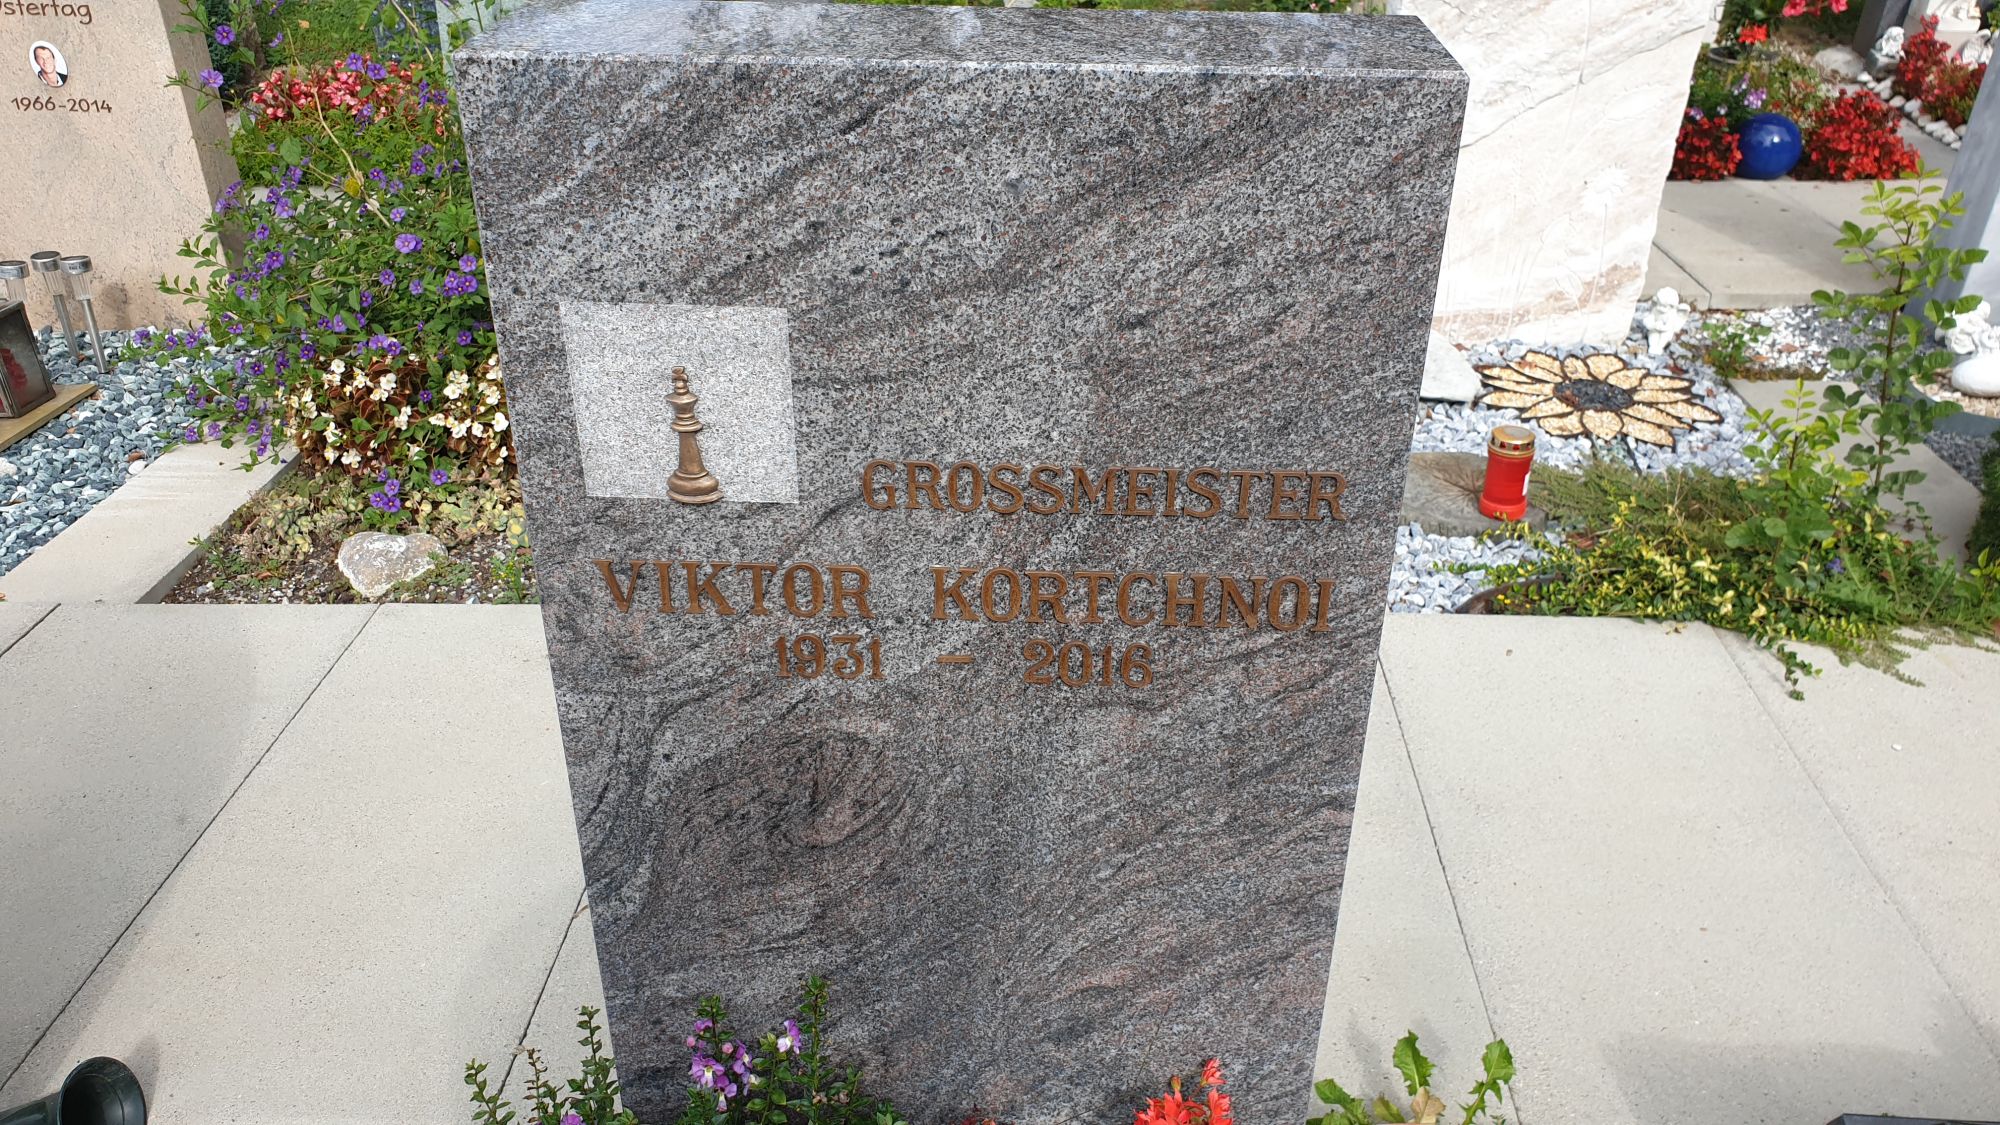 Viktor Korchnoi - Wikipedia